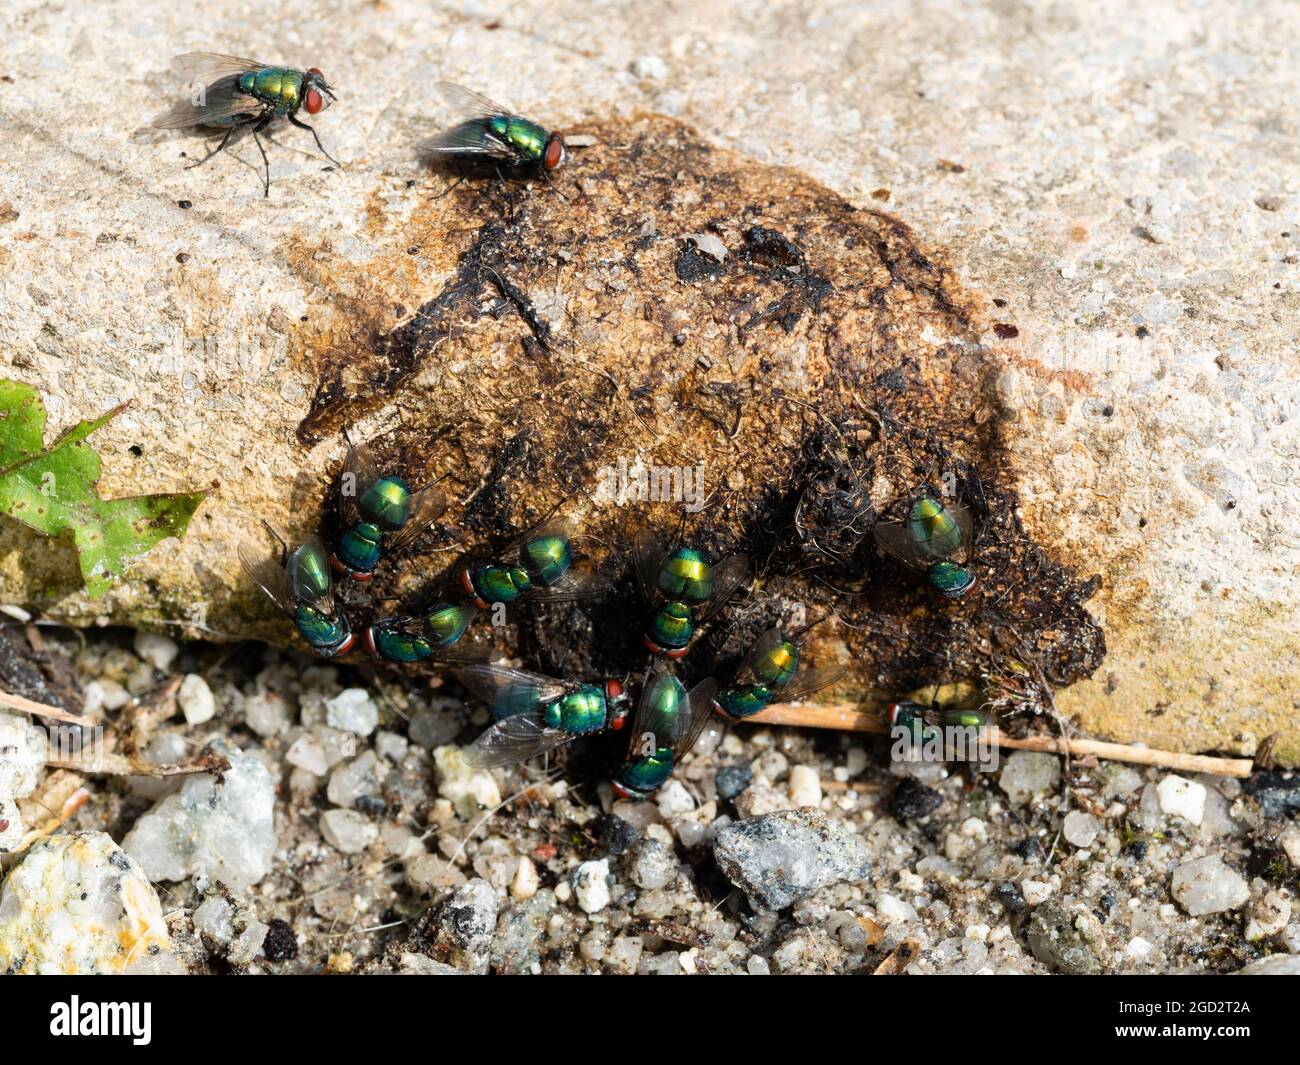 Essaim de mouches vertes communes, Lucilia sericata, regroupées sur les fèces canines pour l'alimentation et la ponte des œufs Banque D'Images